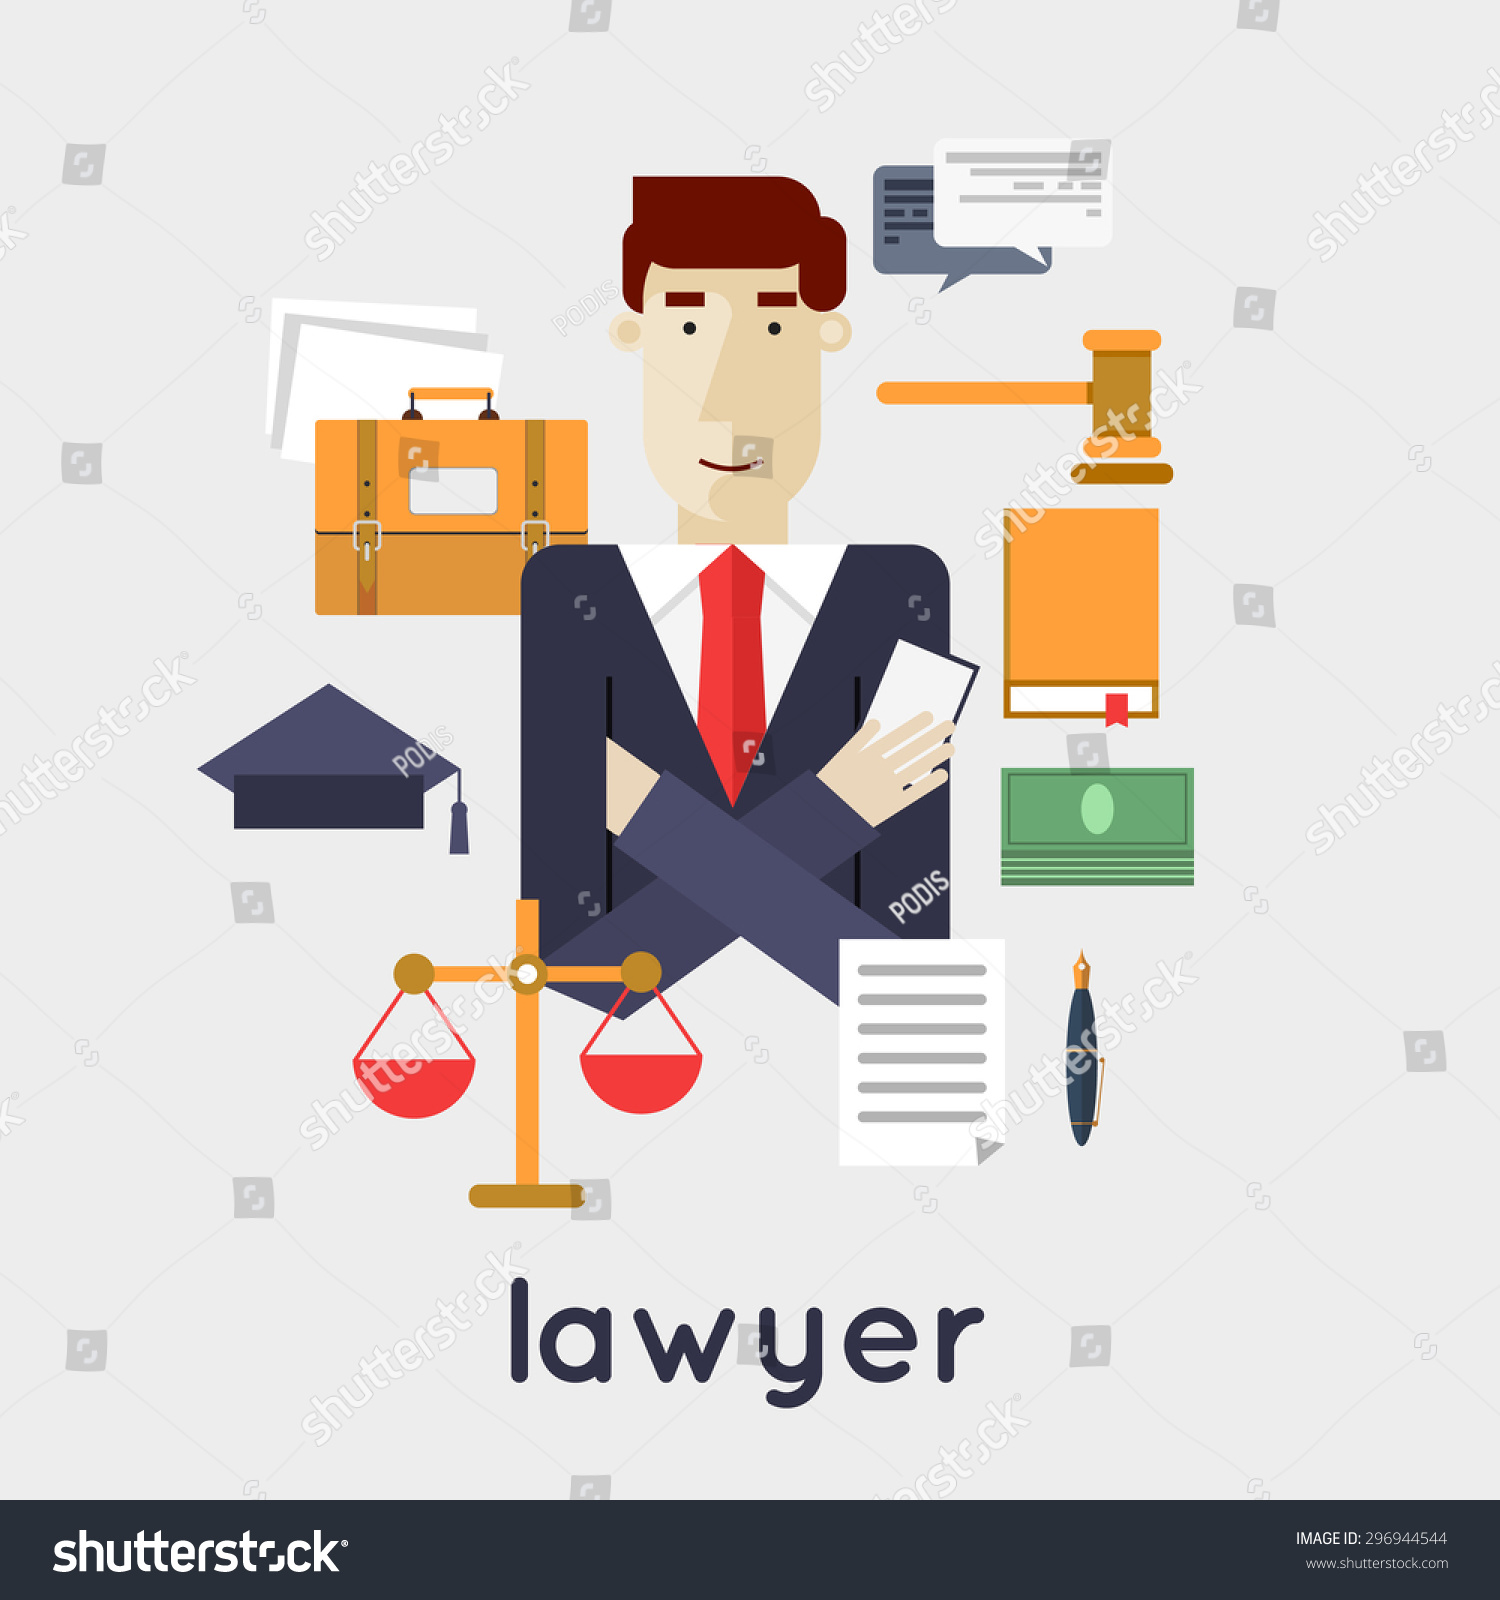 clip art lawyer images - photo #50